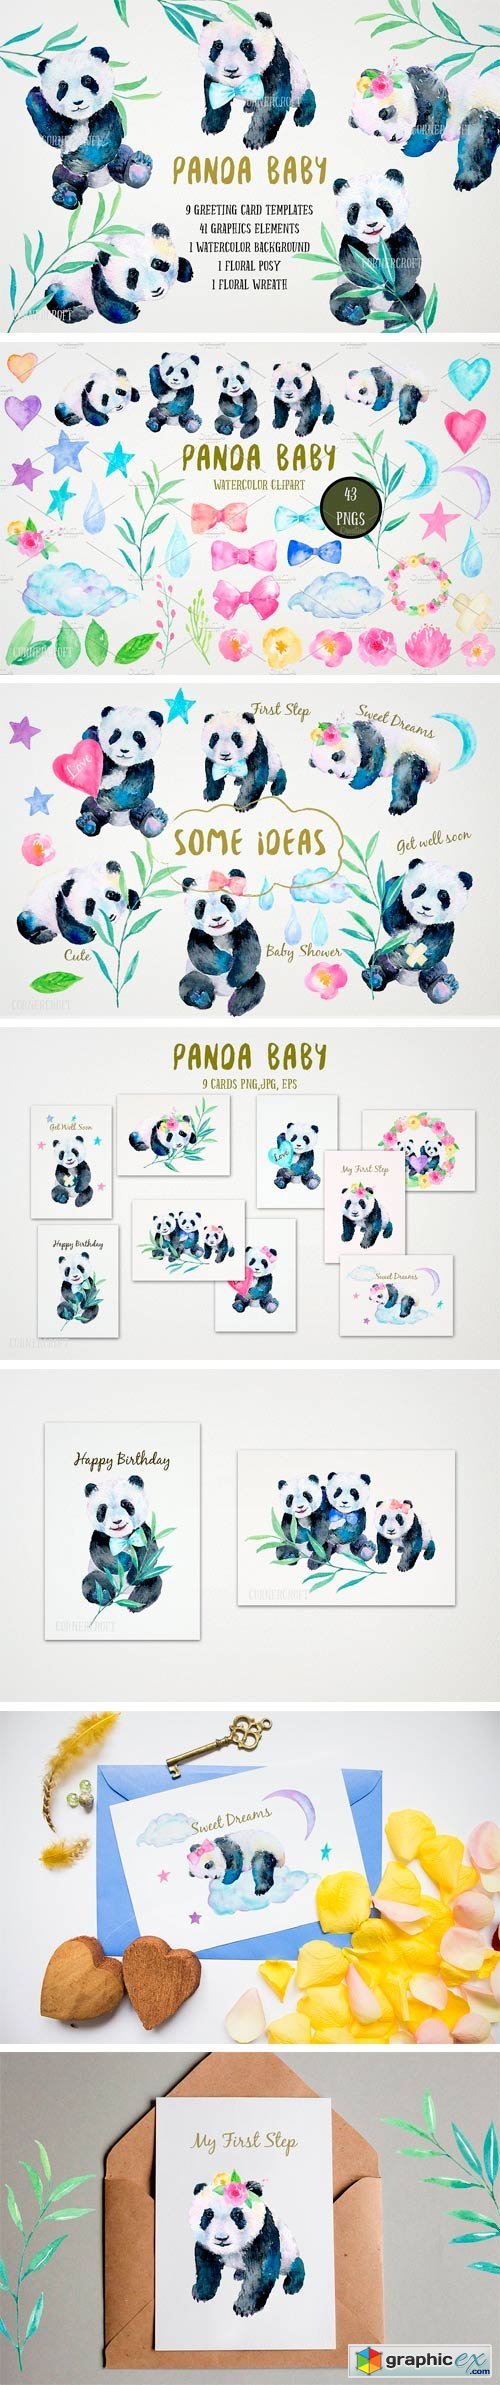 Watercolor Panda Baby